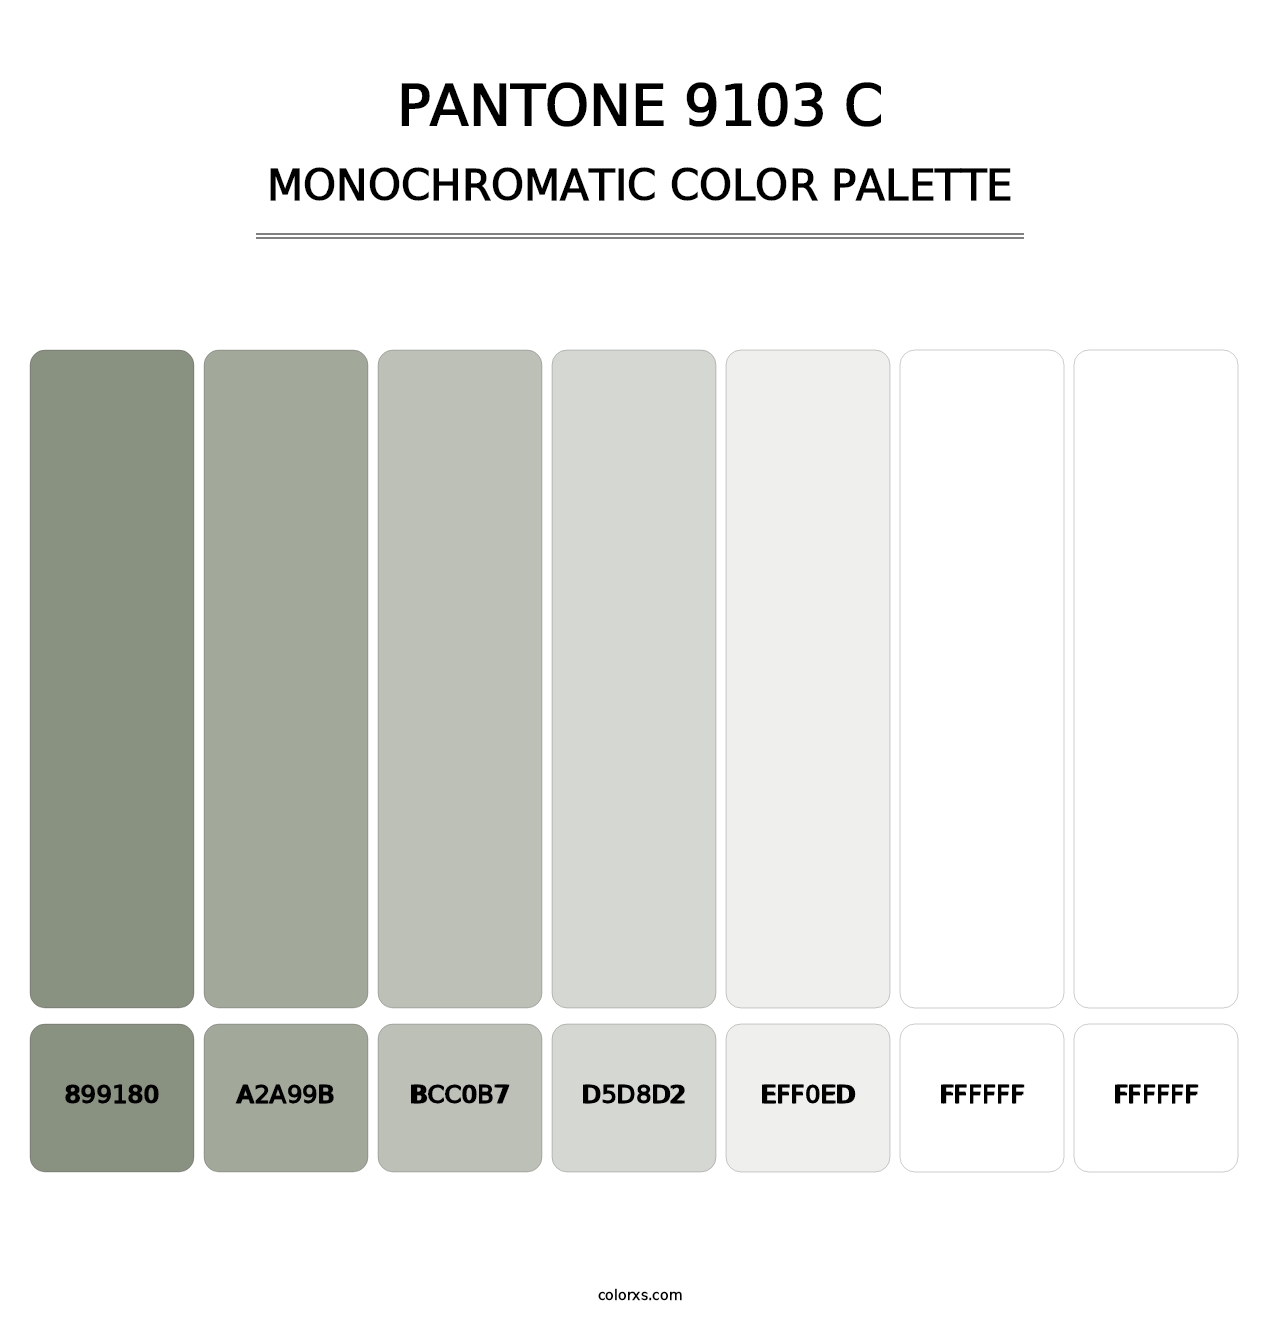 PANTONE 9103 C - Monochromatic Color Palette